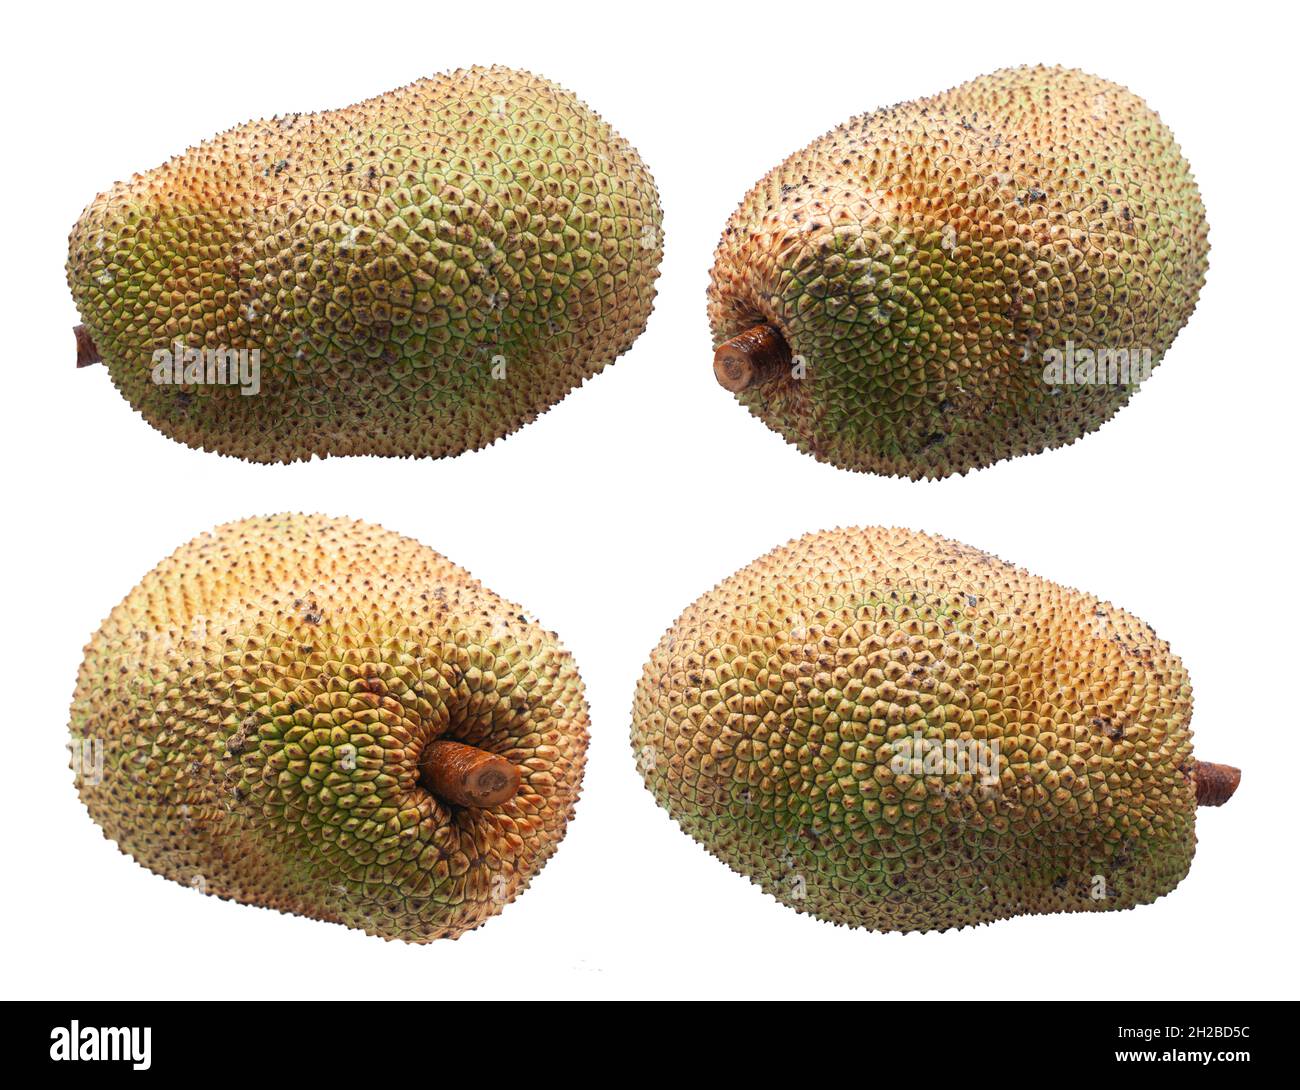 jackfruit isolated on white background. Stock Photo